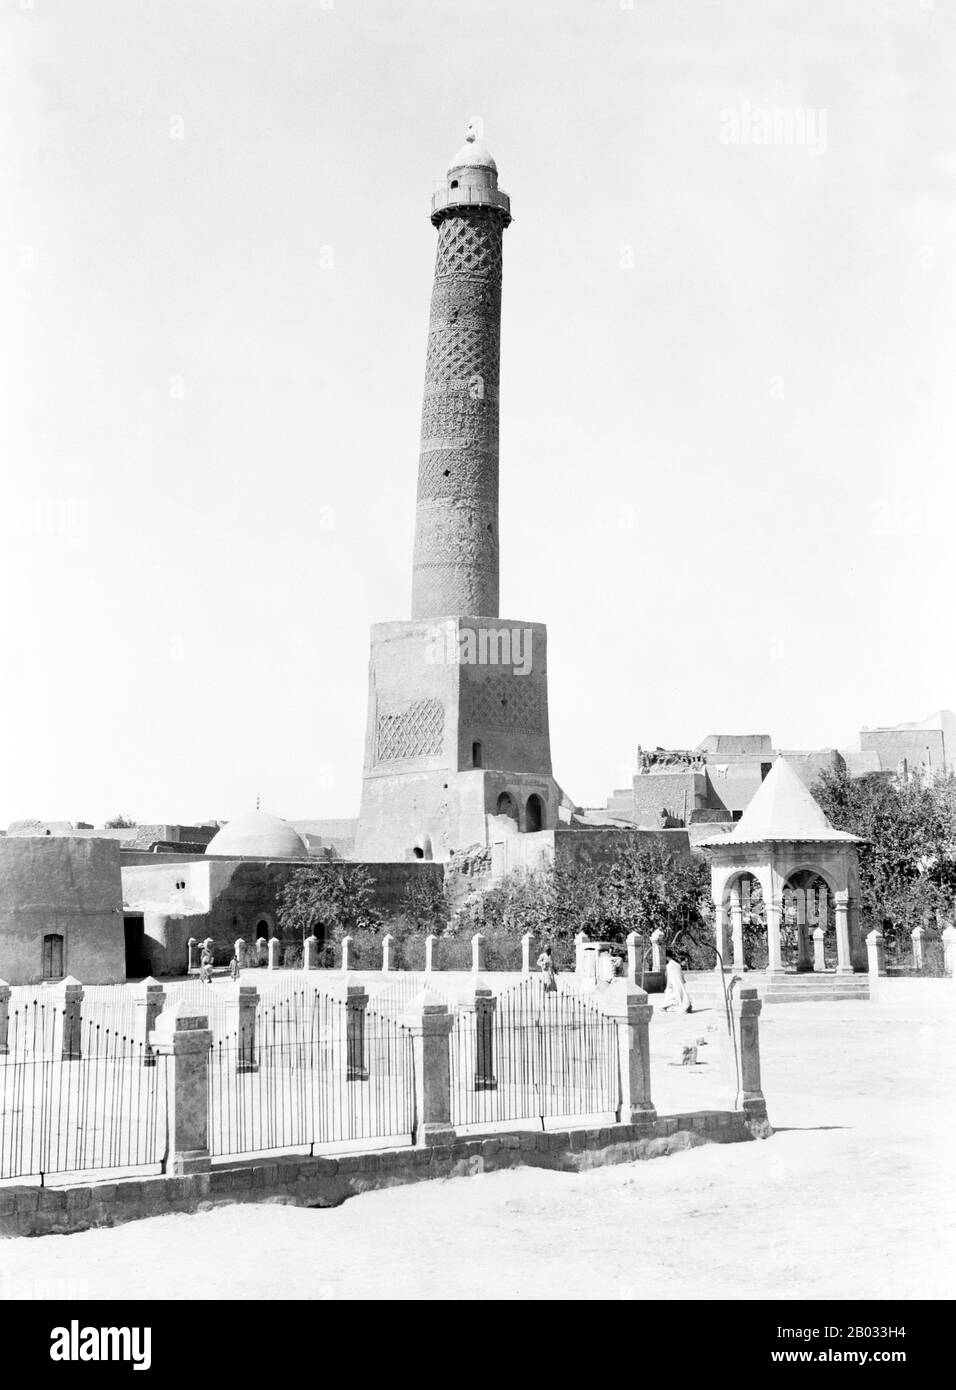 Die Große Moschee von al-Nuri ist eine historische Moschee in Mossul, Irak, die für ihr lehnen Minarett berühmt ist. Tradition hält, dass nur ad-Din Zangi die Moschee in den Jahren 1172-73, kurz vor seinem Tod, baute. Nach der Chronik von Ibn al-Athir ordnete er, nachdem nur ad-Din die Kontrolle über Mossul übernommen hatte, seinem Neffen Fakhr al-Din an, die Moschee zu bauen. Das Bauwerk wurde von ISIS-Kämpfern ins Visier genommen, die Mossul am 10. Juni 2014 besetzten und zuvor das Grab Jonahs zerstörten. Die Einwohner von Mossul jedoch, die mit der Zerstörung ihrer kulturellen Stätten aufstachelt, schützten die Moschee, indem sie eine Menschenkette bildeten und eine Res bildeten Stockfoto